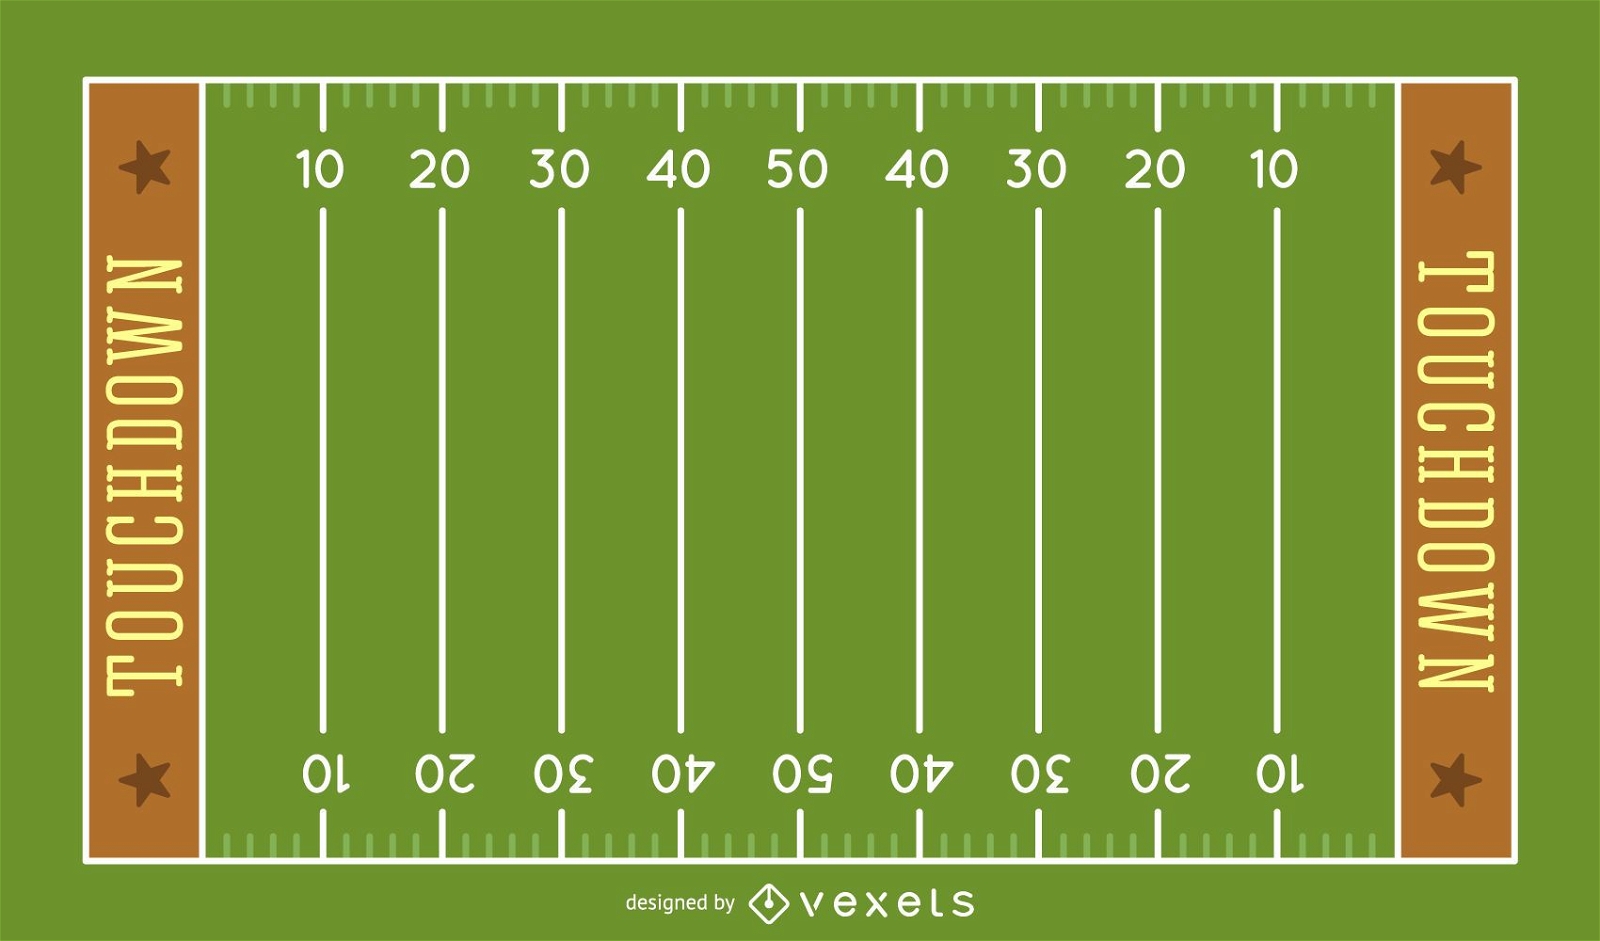 American football field illustration